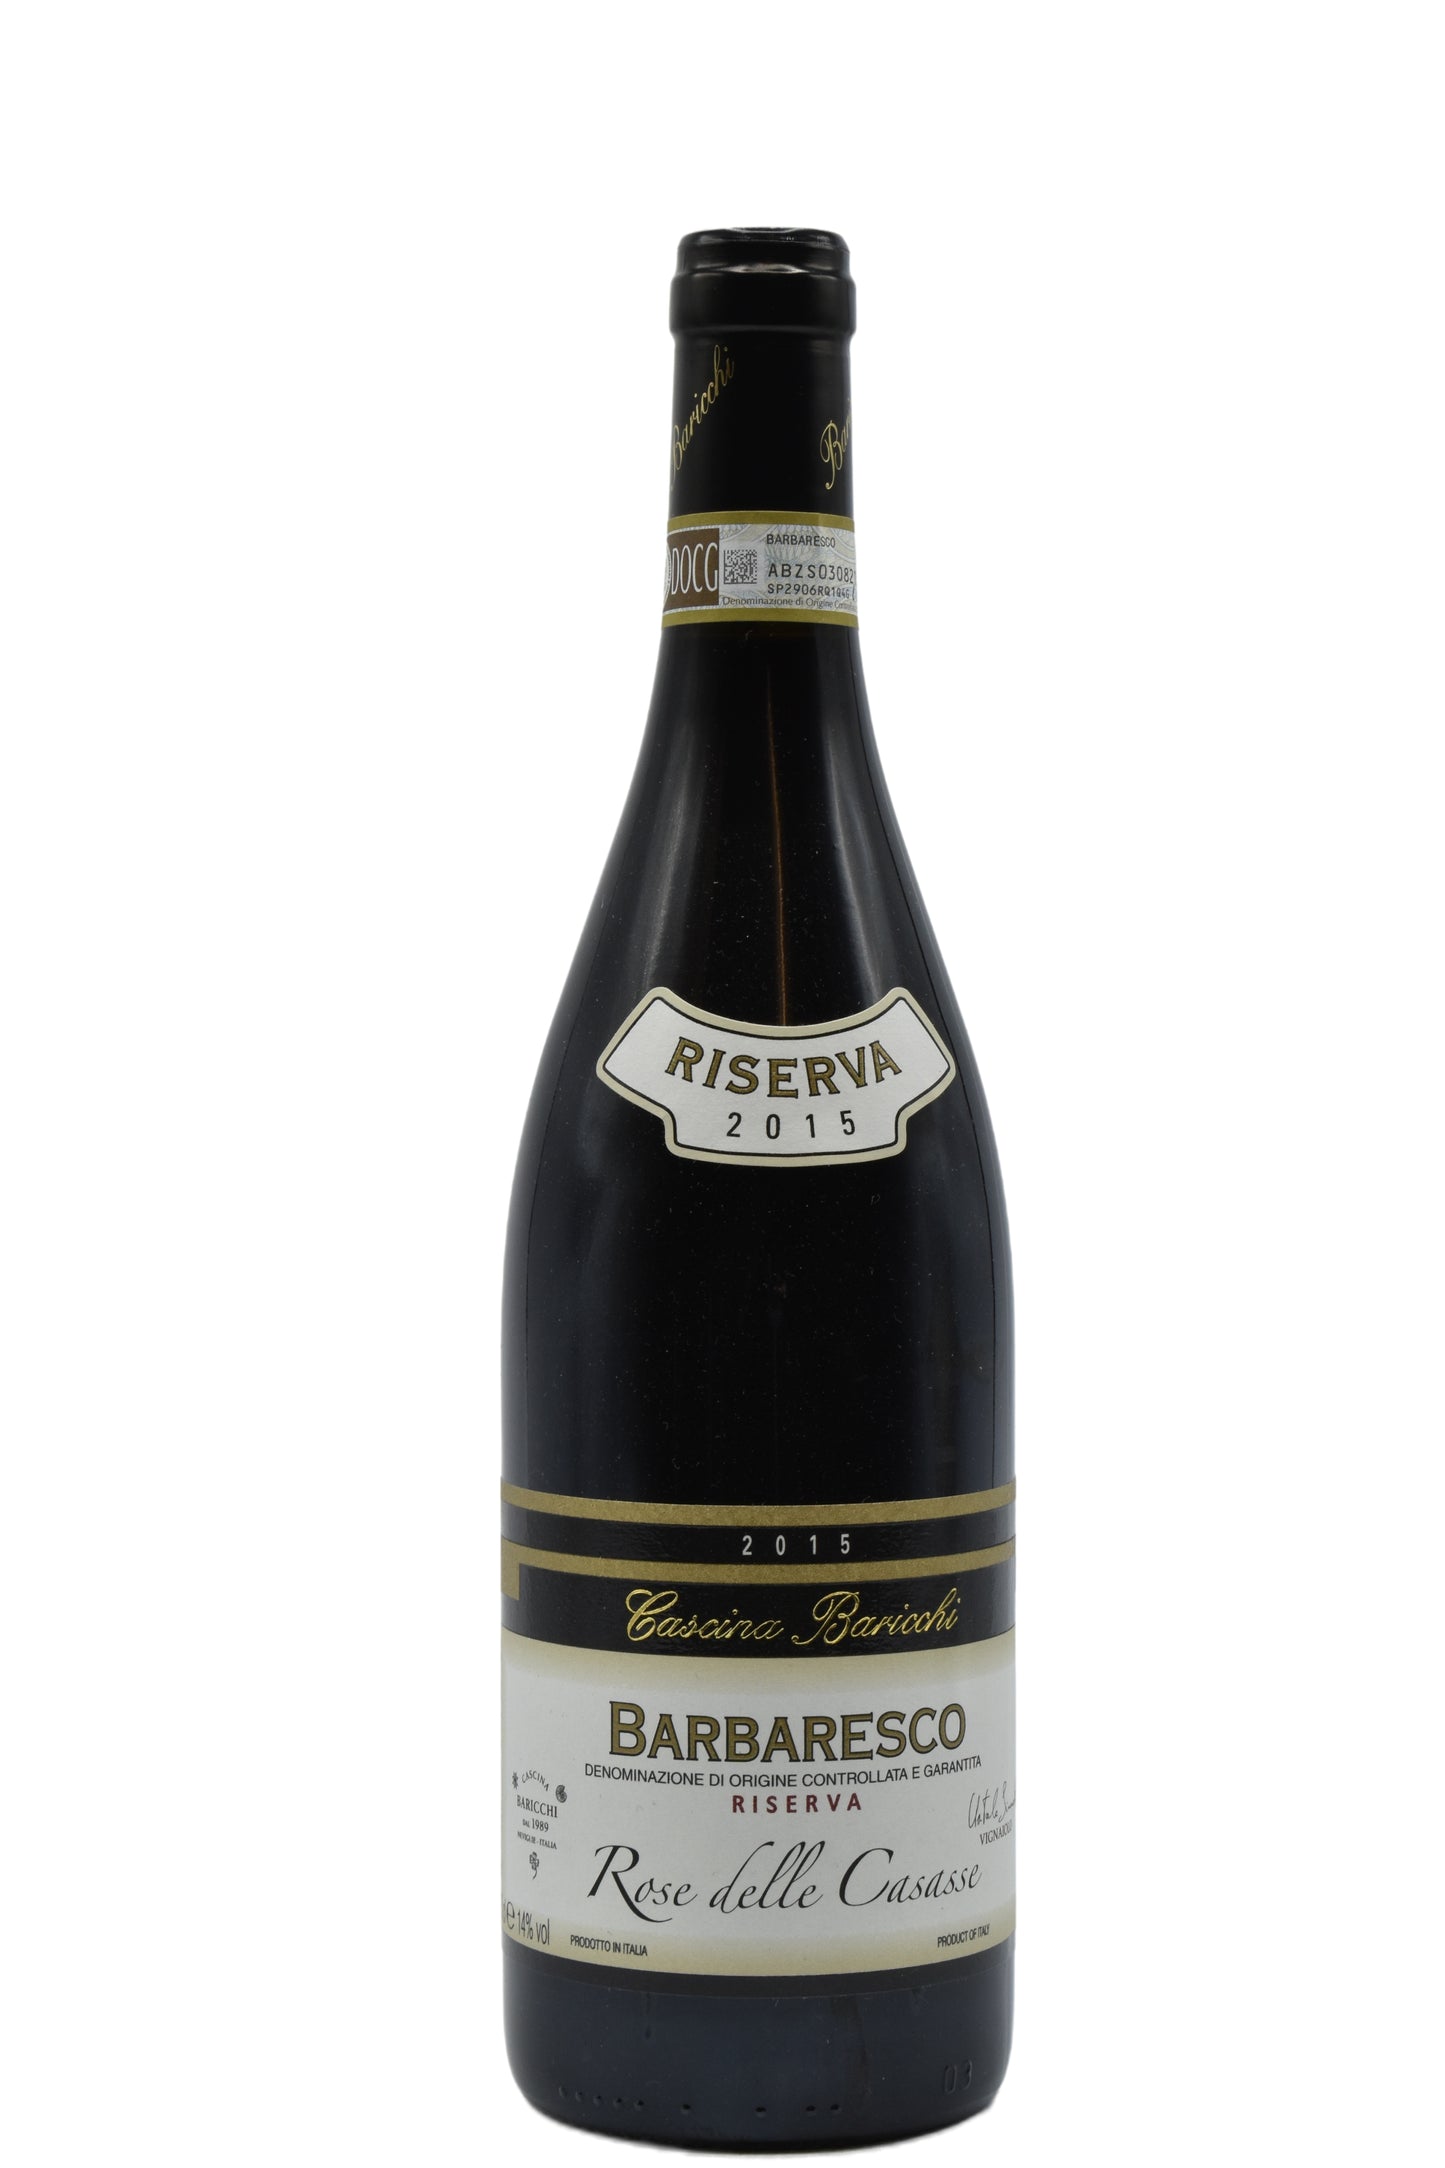 2015 Cascina Baricchi, Barbaresco Riserva "Rose della Casesse" 750ml - Walker Wine Co.